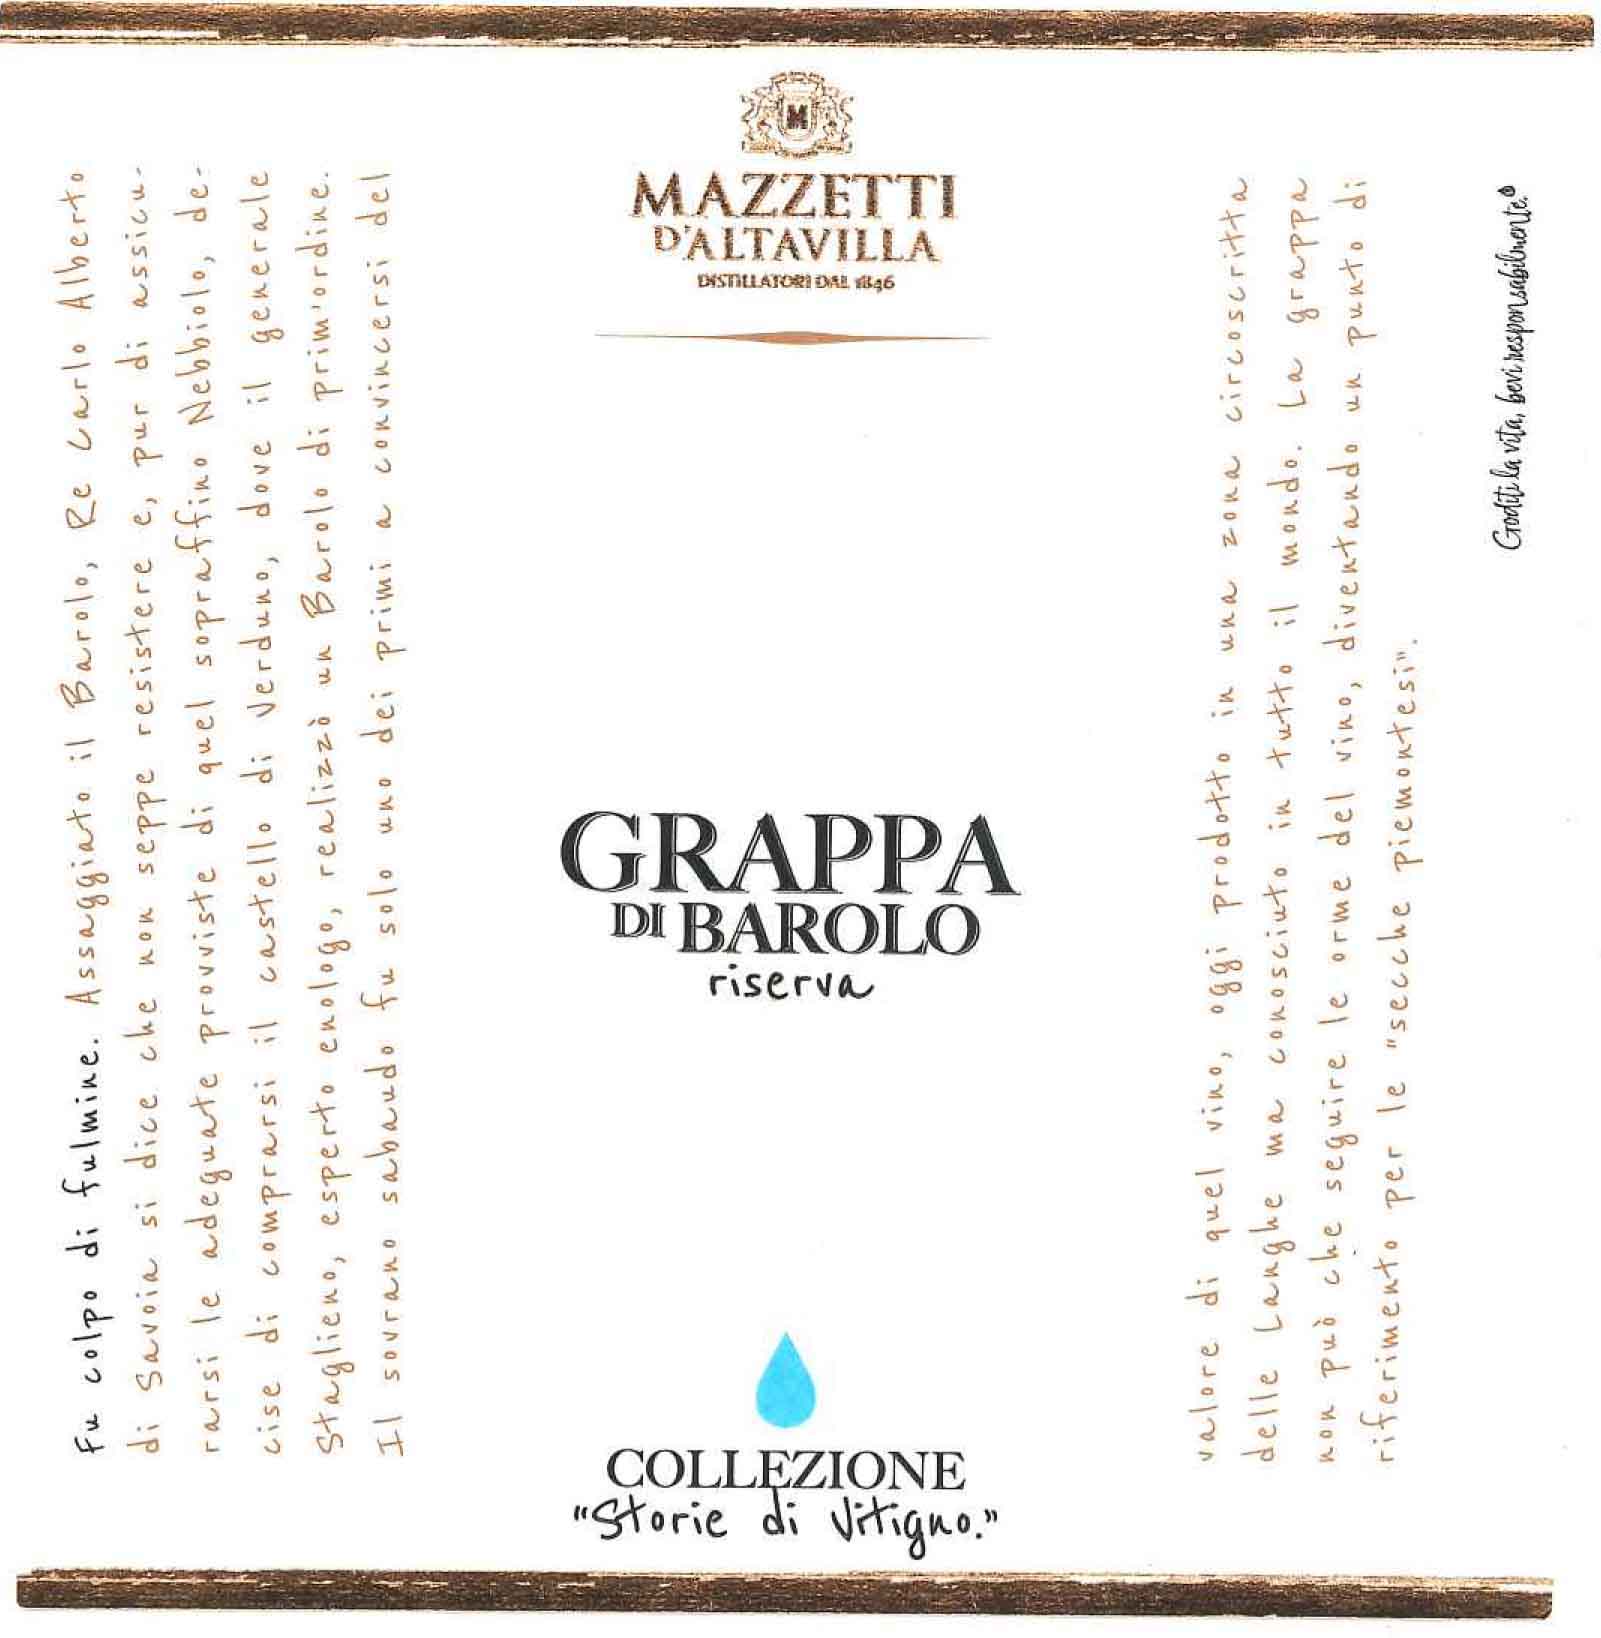 Mazzetti d'Altavilla - Grappa di Barolo label